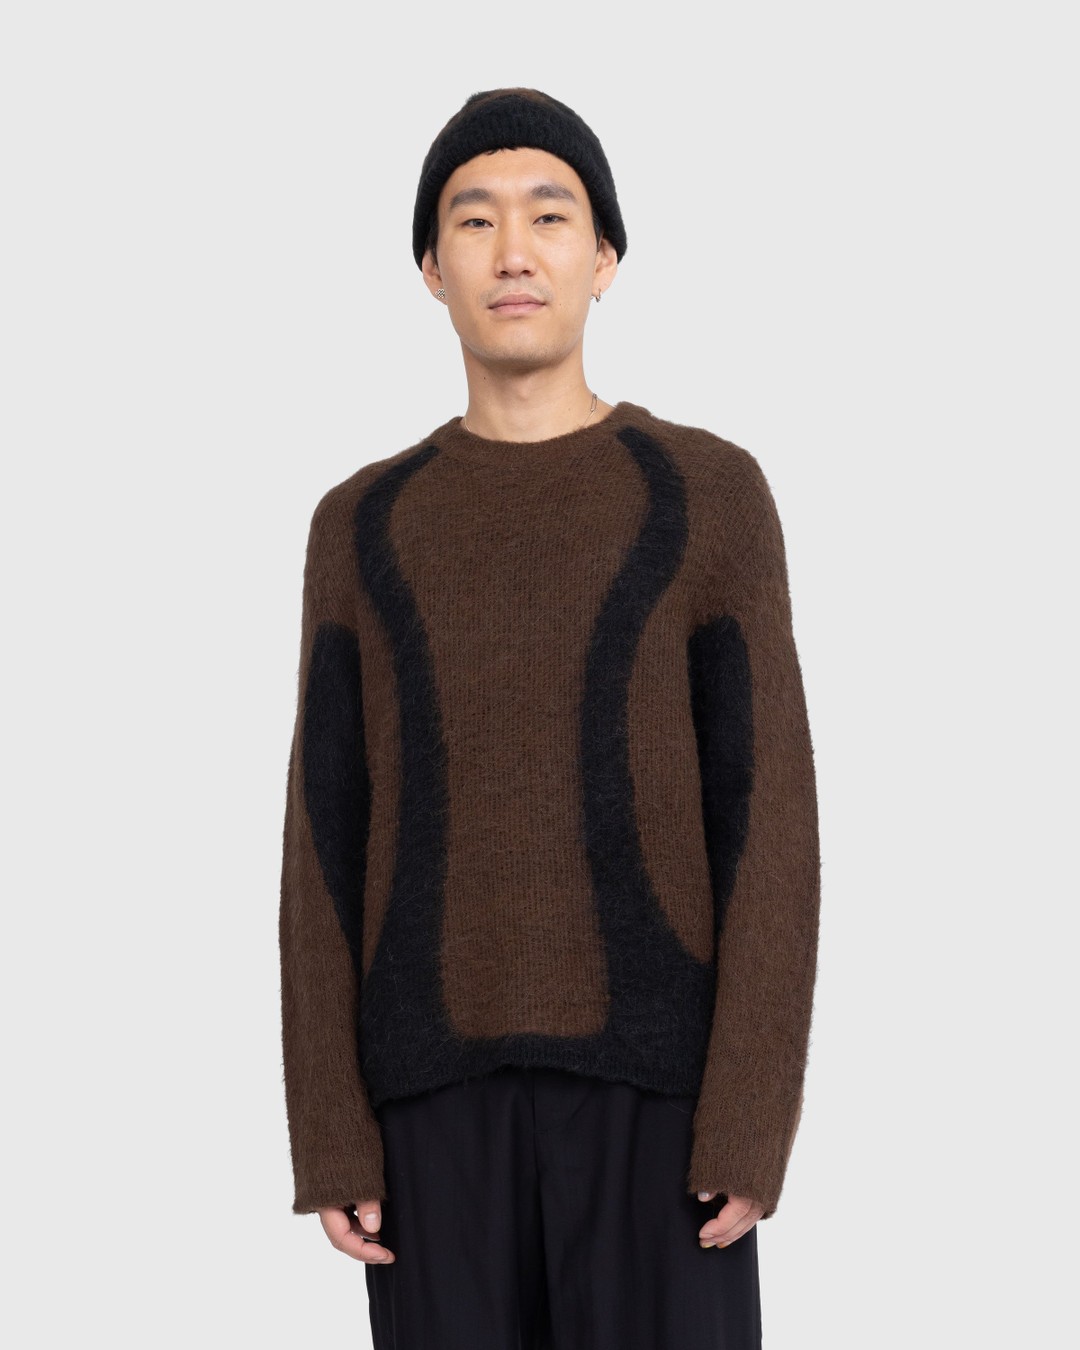 _J.L-A.L_ – Liquid Alpaca Sweater Black - Knitwear - Black - Image 2